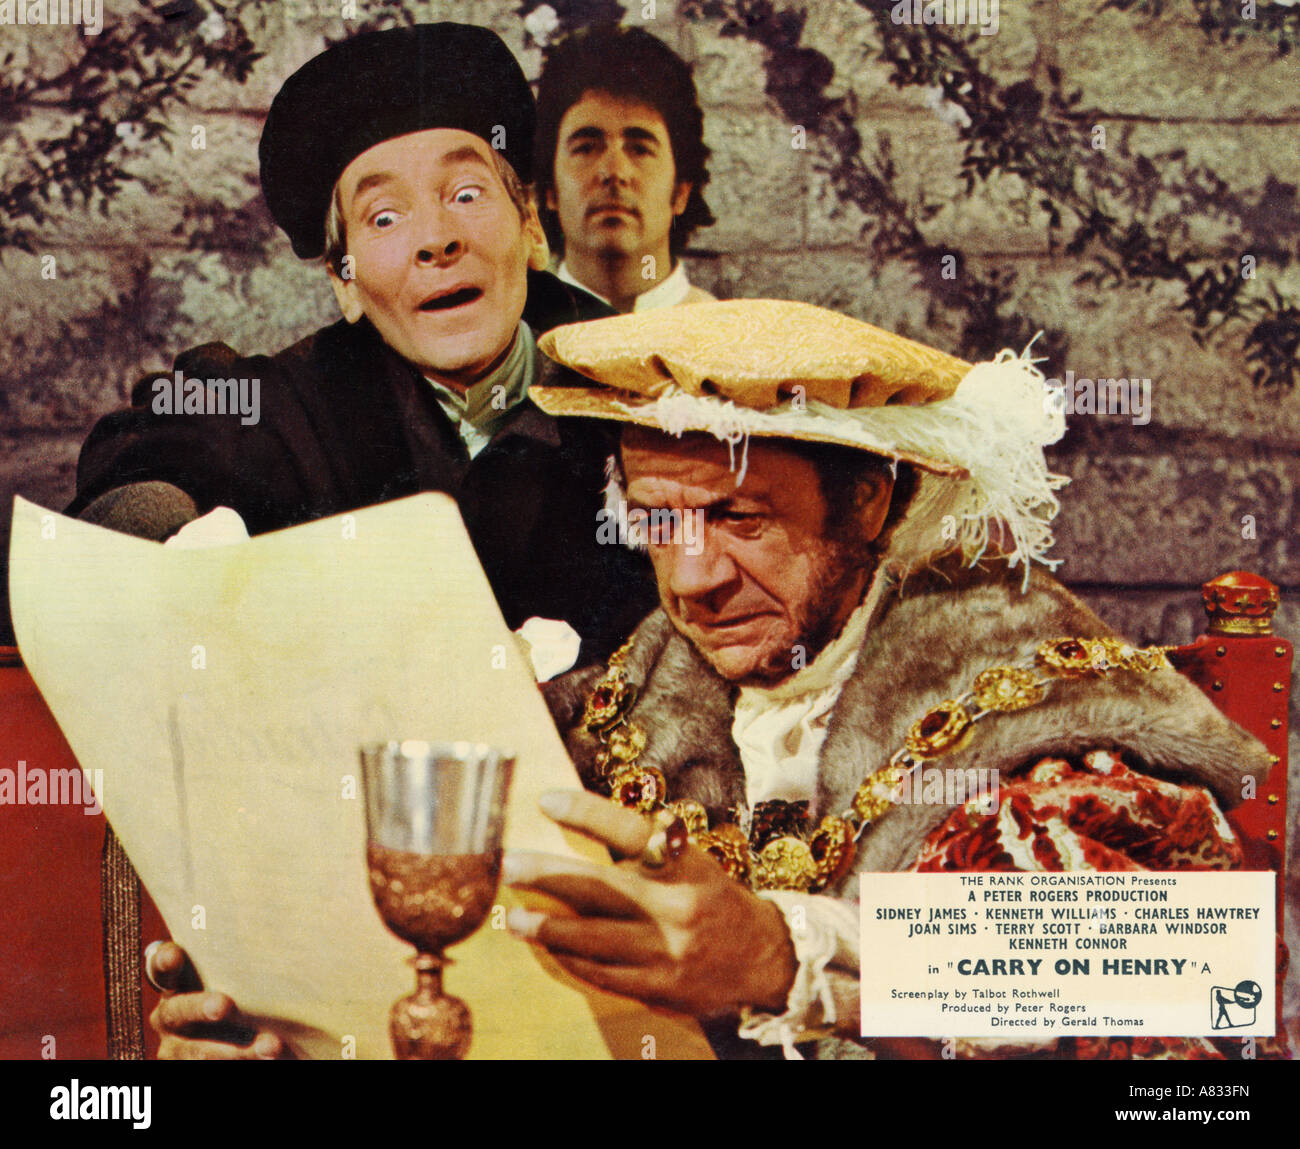 Portare su HENRY - 1971 Rank/Peter Rogers film con da Kenneth Williams a sinistra e Sid James Foto Stock